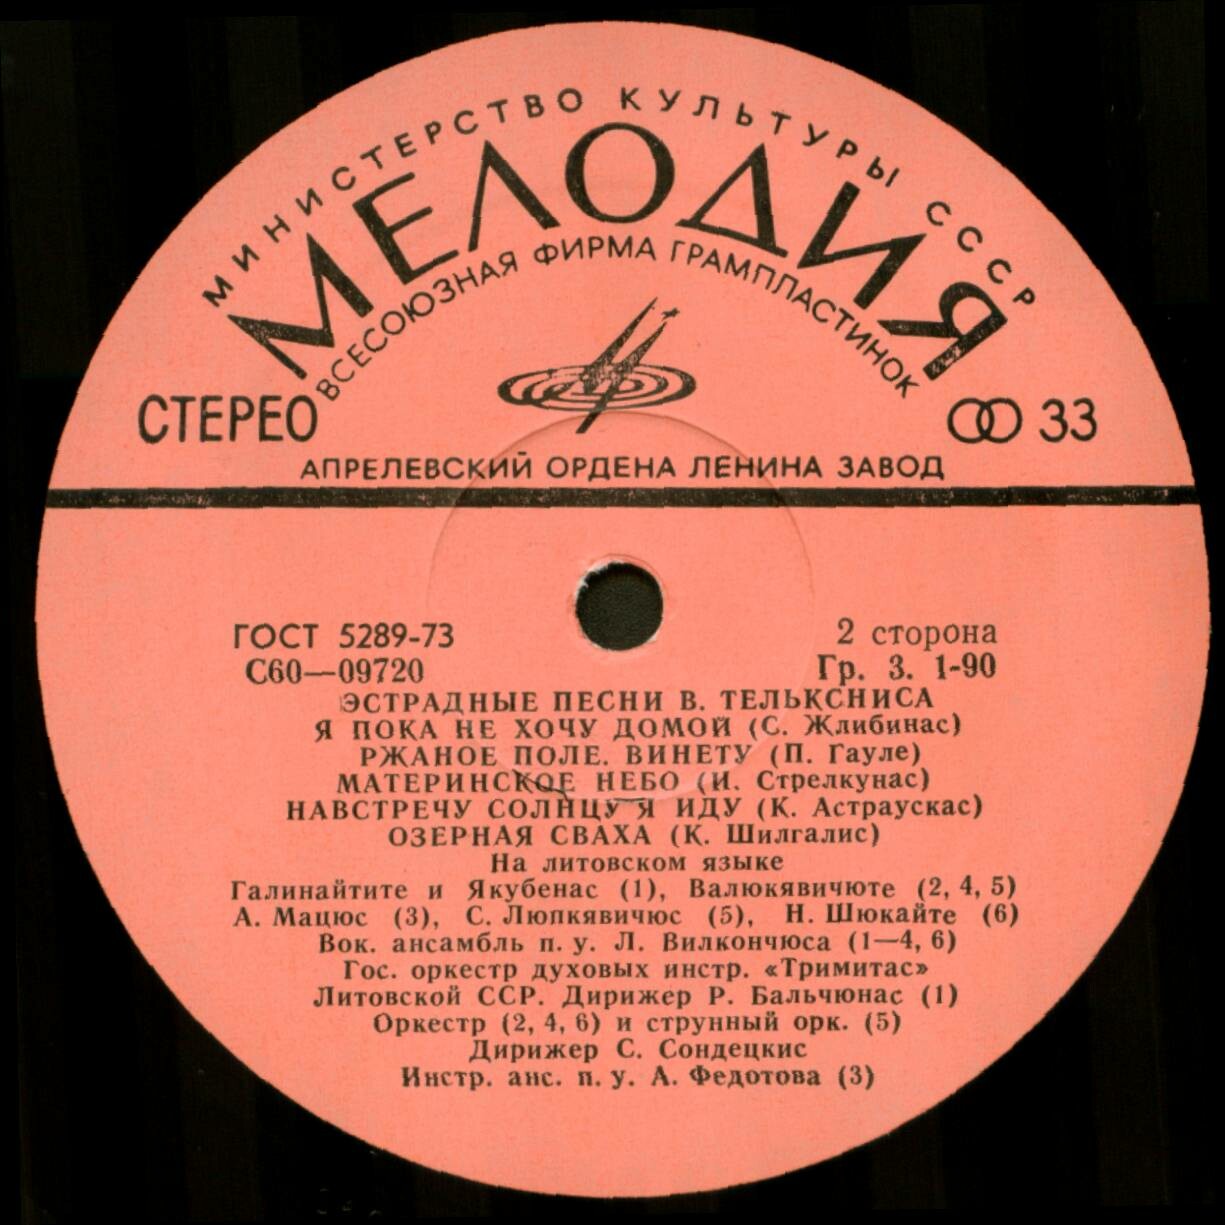 Эстрадные песни Вигандаса ТЕЛЬКСНИСА (1934) - на литовском языке